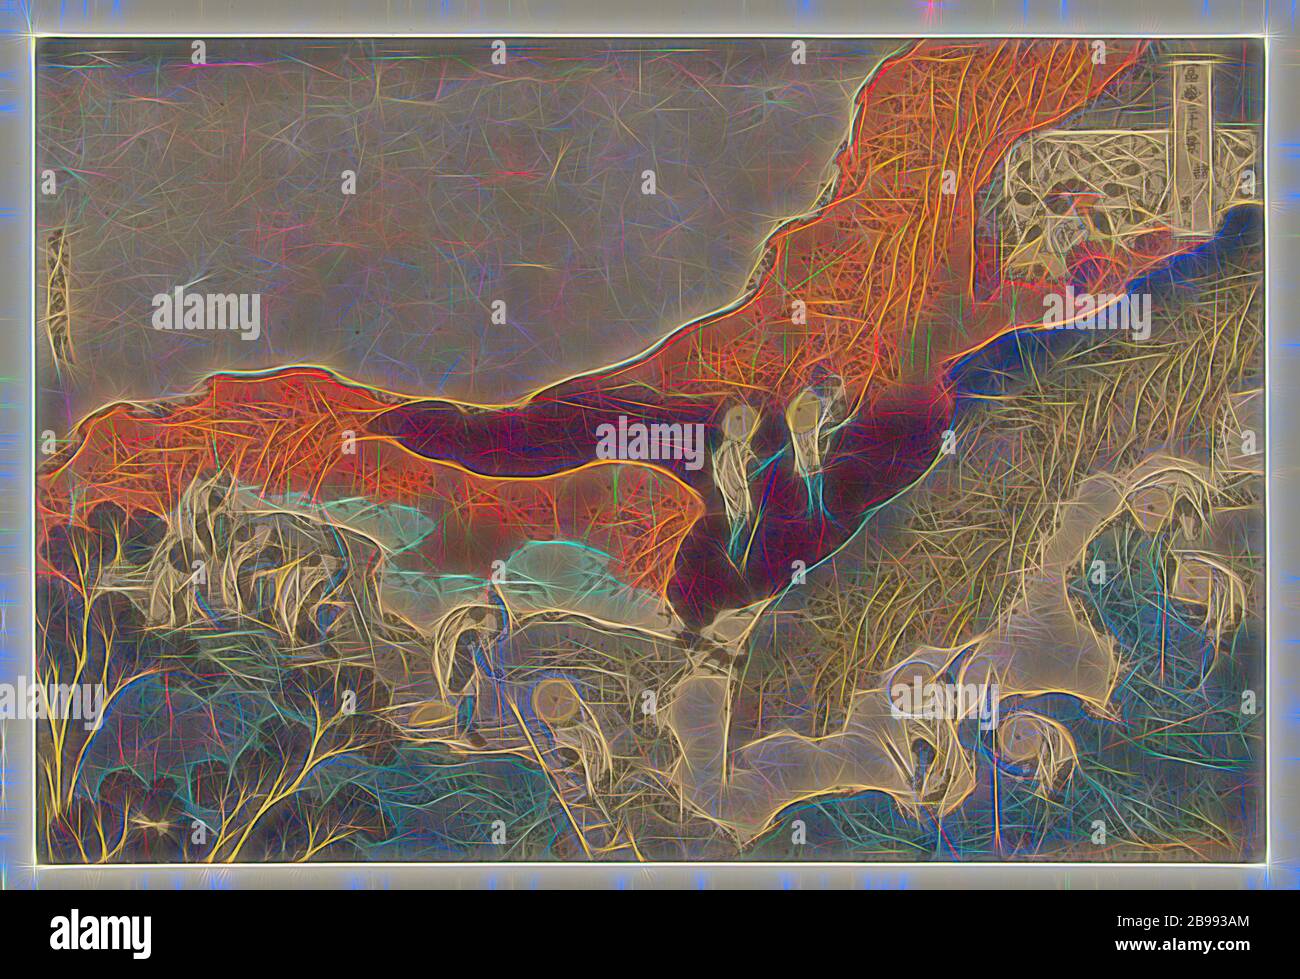 Bergsteiger Shojin tozan (Titel auf Objekt) 36 Ansichten des Fuji-Berges (Serientitel) Fuji sanjurokkei (Serientitel auf Objekt), Pilger in weißer Kleidung beim Aufstieg auf den Fuji-Berg, rechts oben verschiedene Pilger in einer Höhle, Fuji, der Berg, Katsushika Hokusai (auf Objekt erwähnt), 1831 - 1835, Papier, Farbholzschnitt, H 244 mm × B 368 mm, neu gestaltet von Gibon, Design von warmen fröhlich glühen von Helligkeit und Lichtstrahlen Ausstrahlung. Klassische Kunst neu erfunden mit einem modernen Twist. Fotografie inspiriert von Futurismus, umarmt dynamische Energie der modernen Technologie, Bewegung, Geschwindigkeit und revolutionieren Cultu Stockfoto